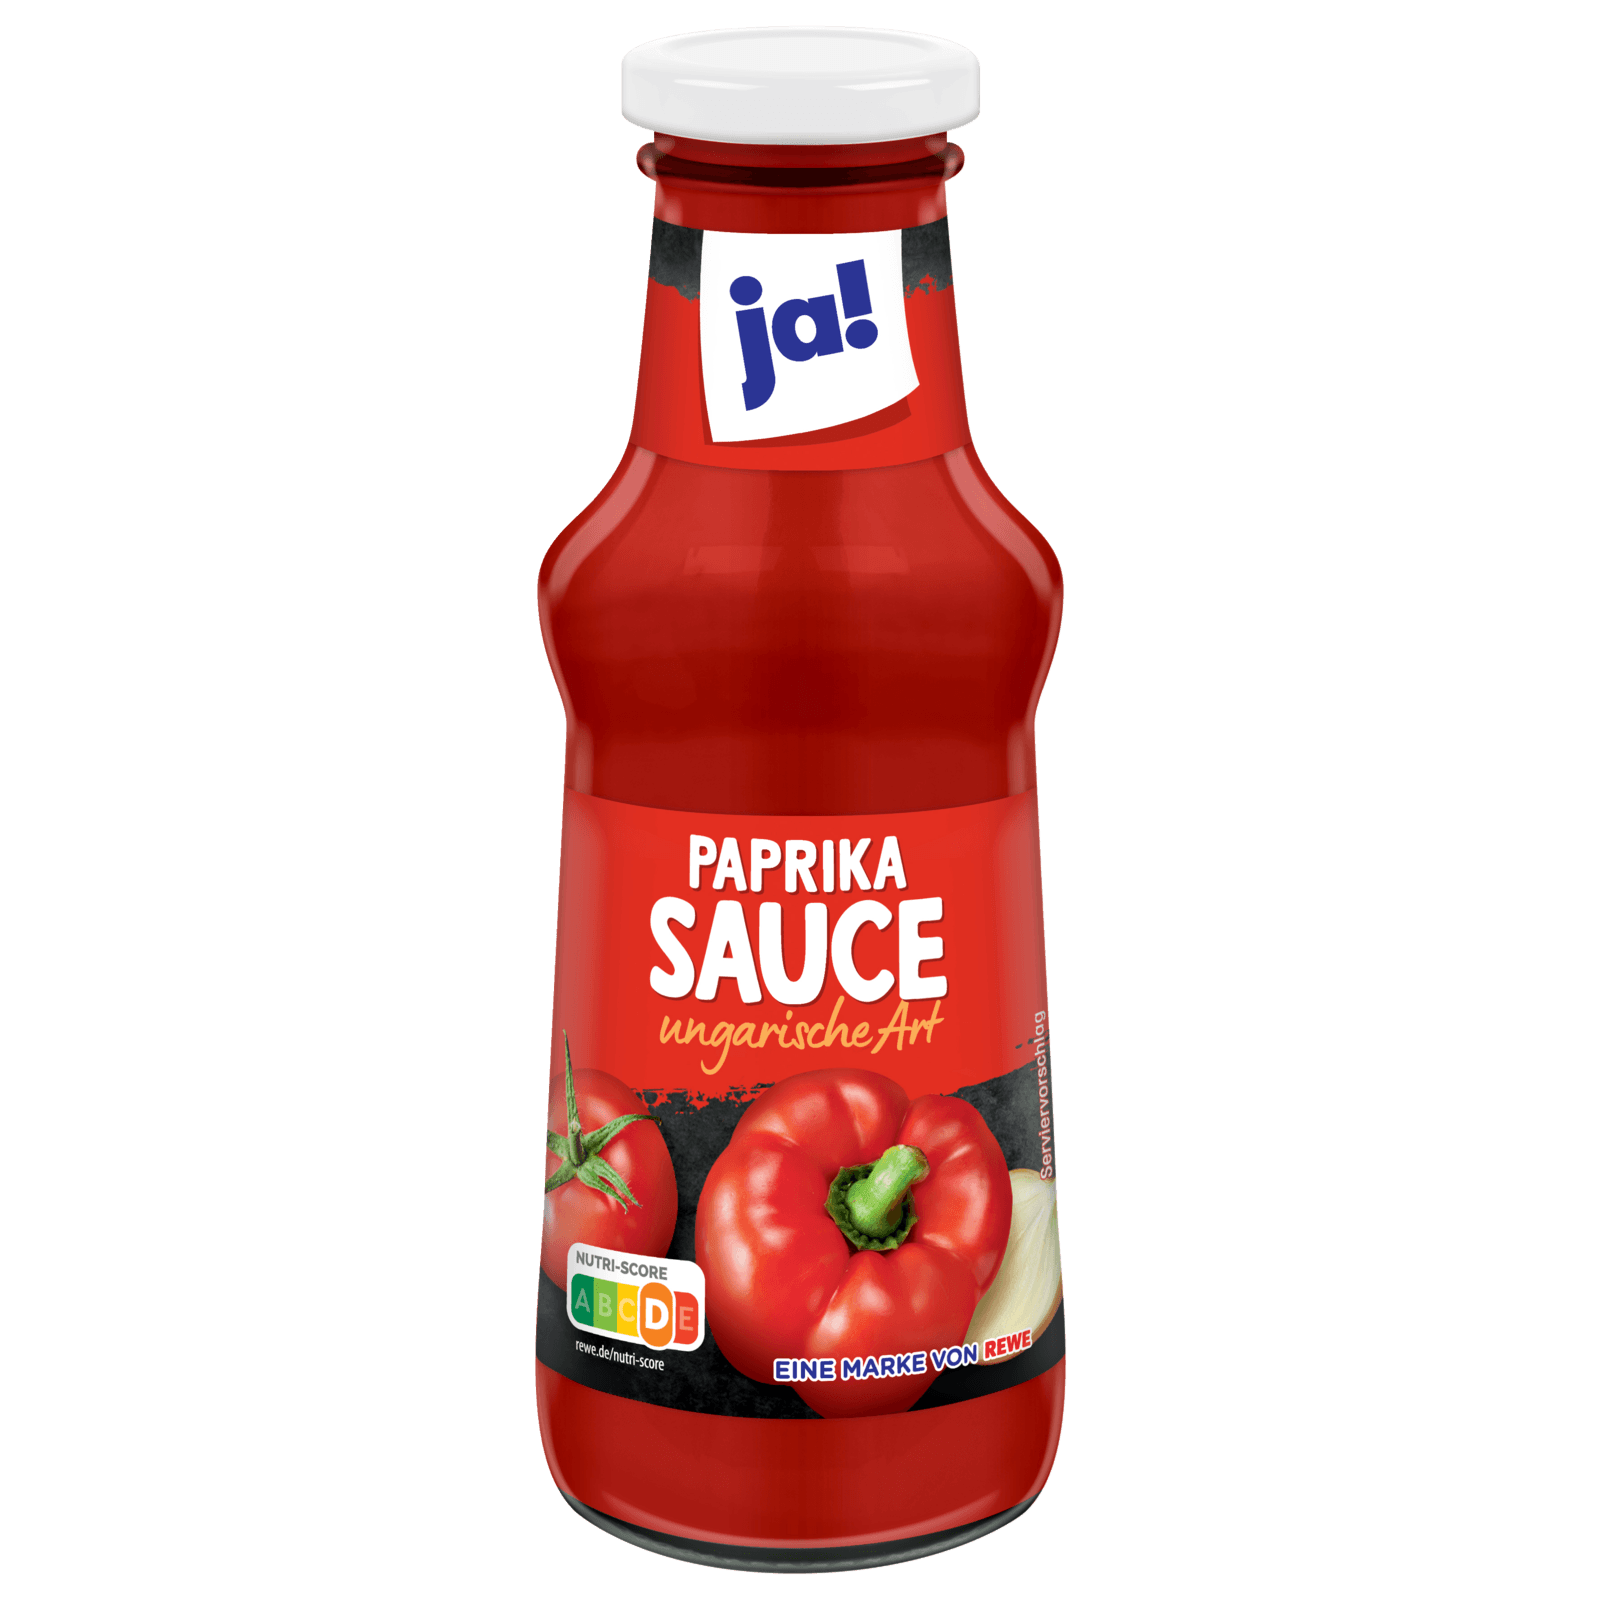 ja! Paprika Sauce nach ungarischer Art 250ml bei REWE online bestellen!